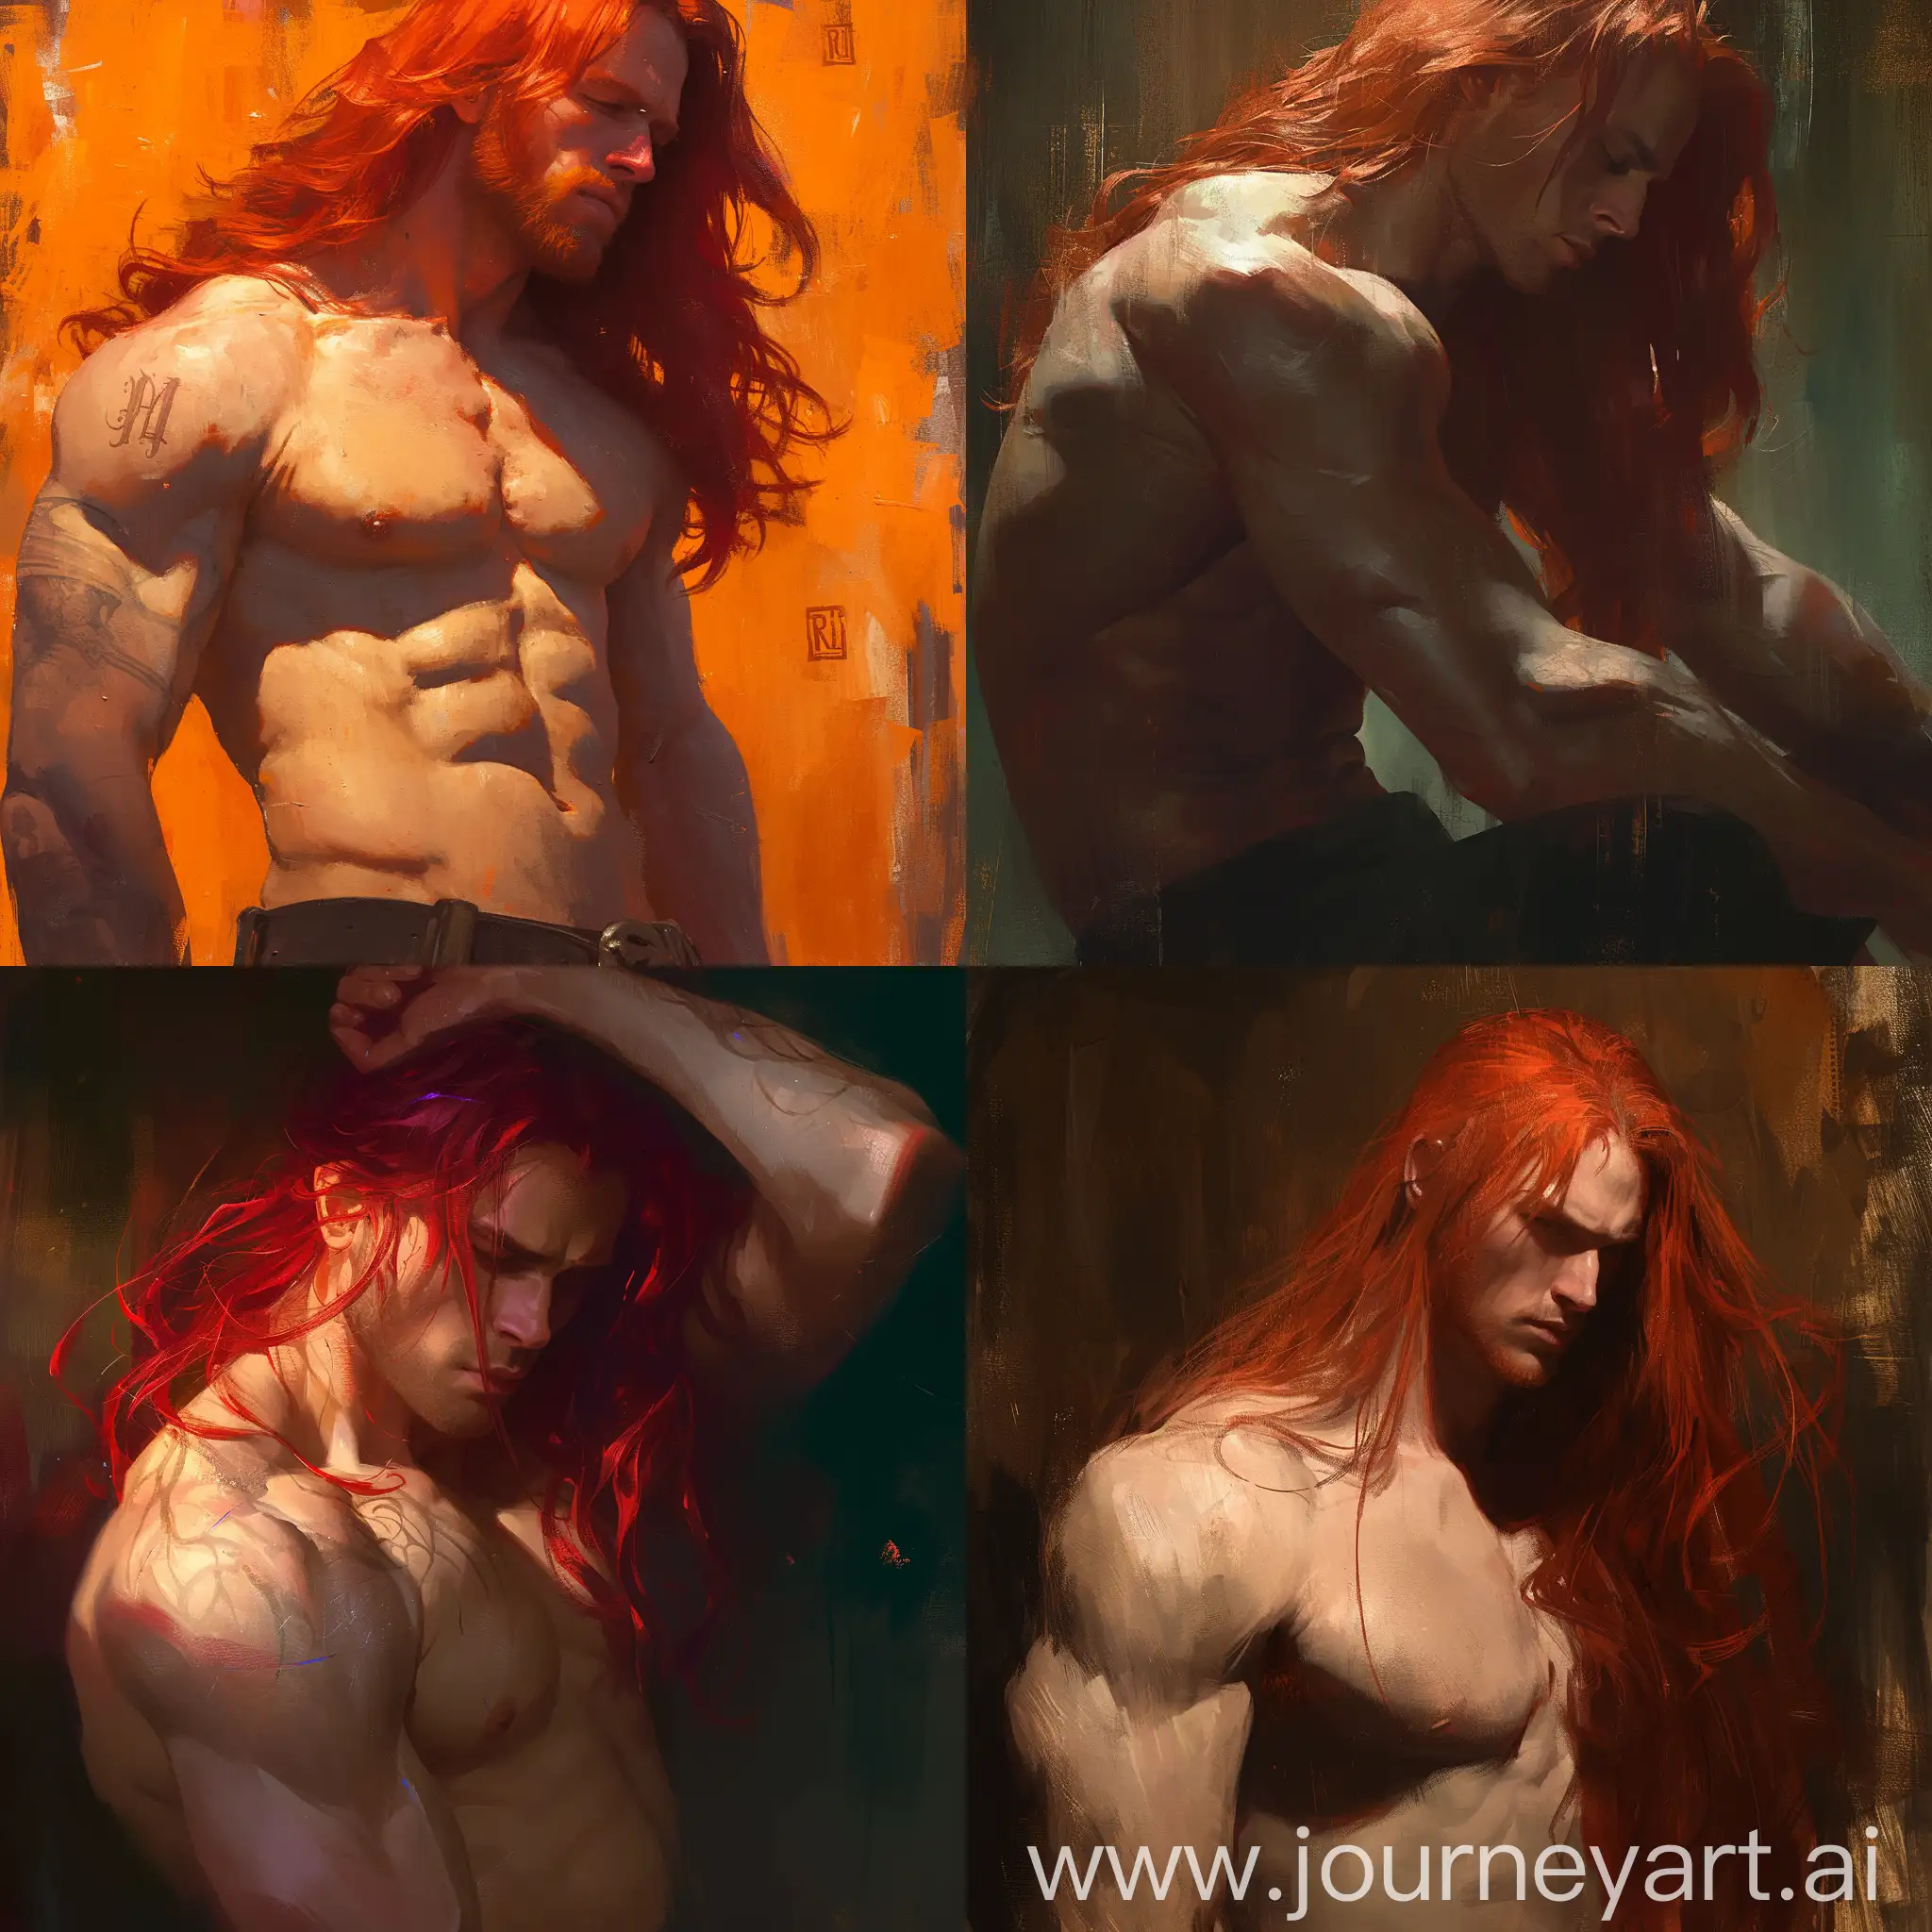 Fantasy-Volumetric-Lighting-RedHaired-Shirtless-Man-in-Detailed-Digital-Art